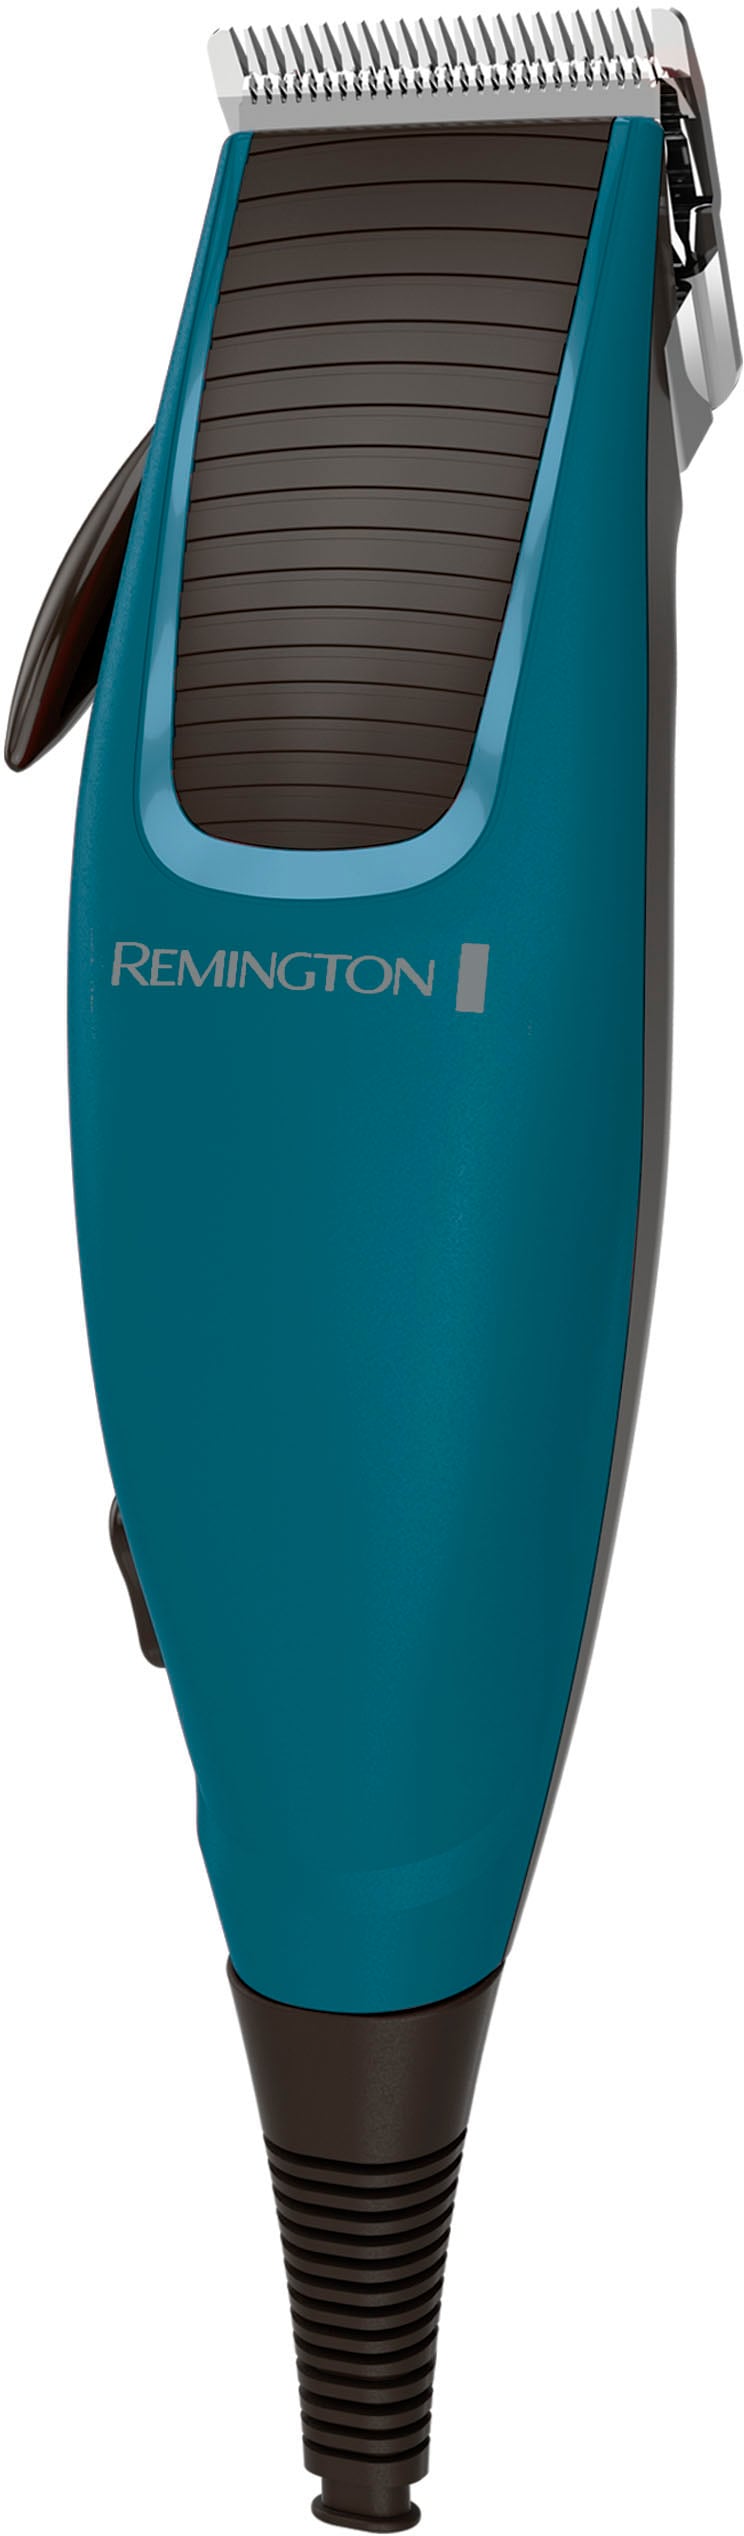 Remington Haarschneider »Apprentice HC5020«, 5 Aufsätze, mit viel Zubehör  kaufen